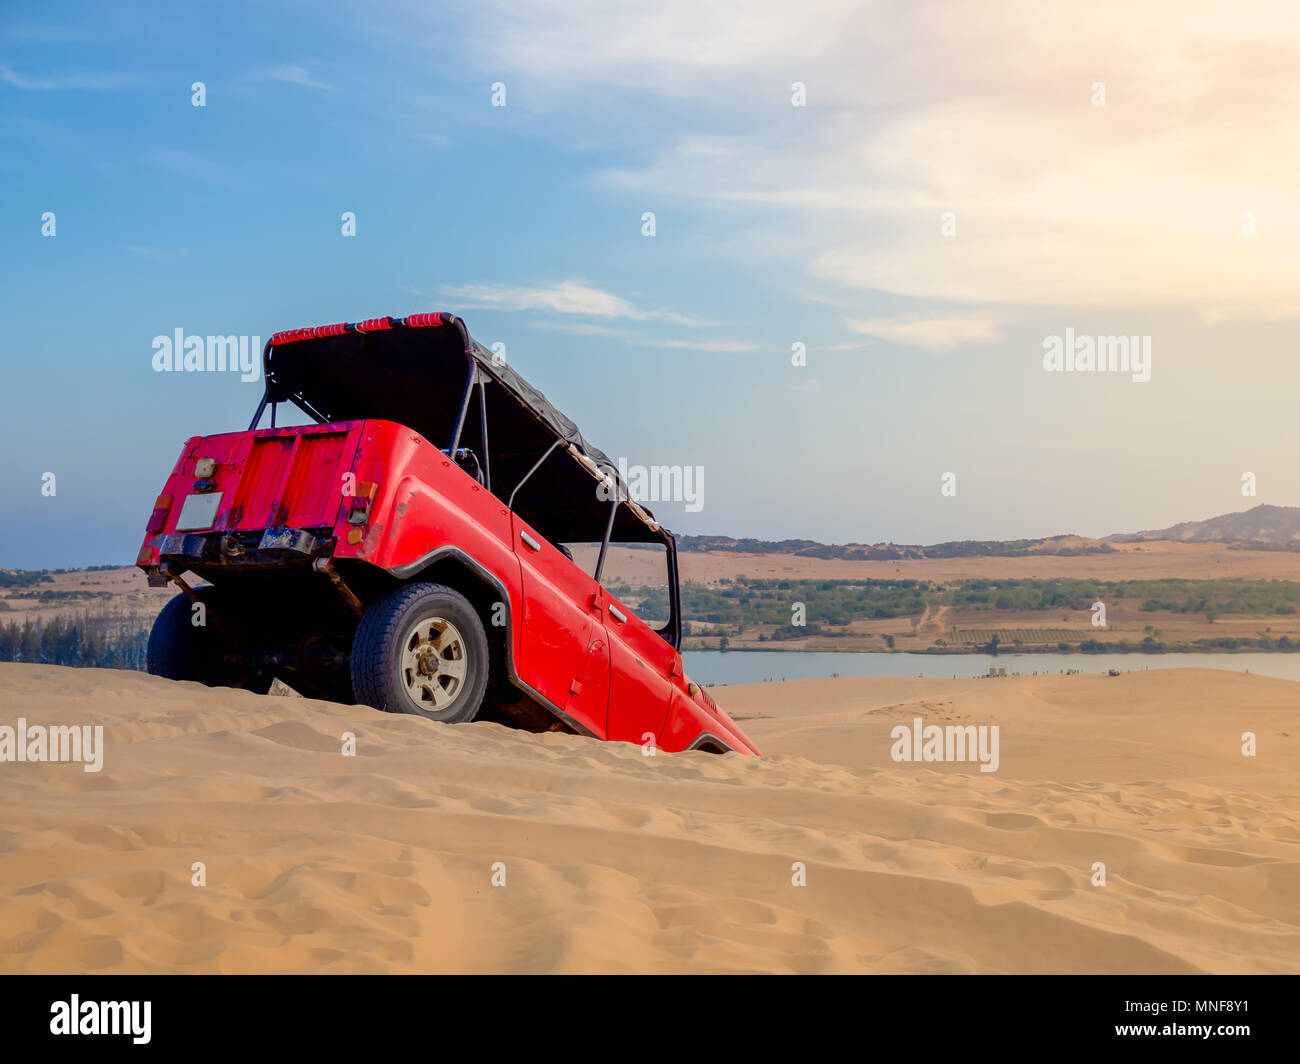 Red Off Road Auto Fahrzeug für Abenteuer Rubrik auf die Sanddünen in Mui Ne, Vietnam auf dem Sunset Landschaft Stockfoto